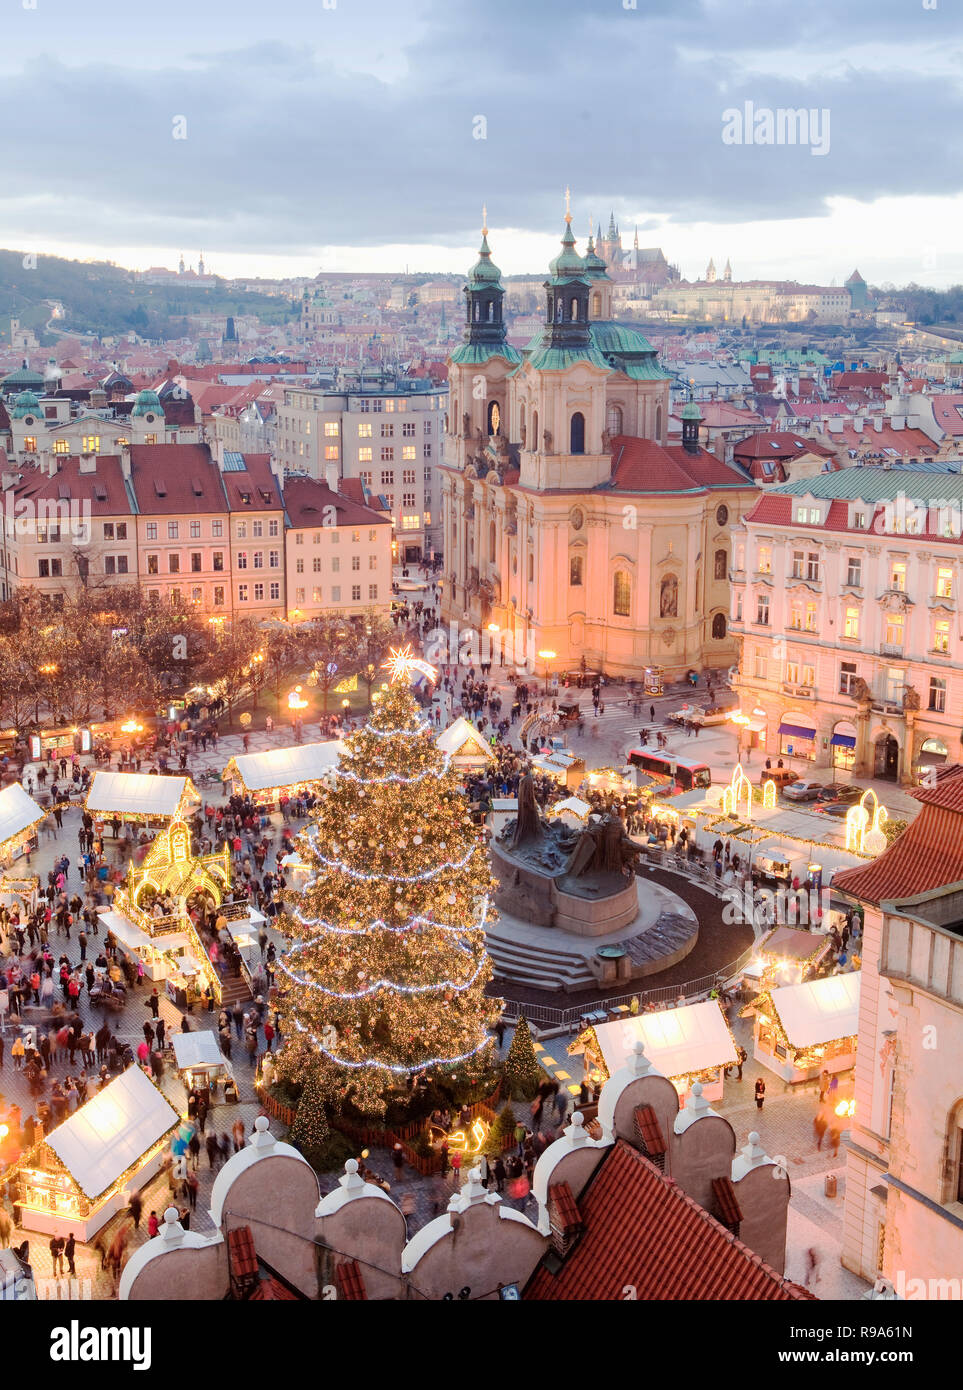 Tschechische Republik, Prag - Weihnachtsmarkt auf dem Altstädter Ring Stockfoto